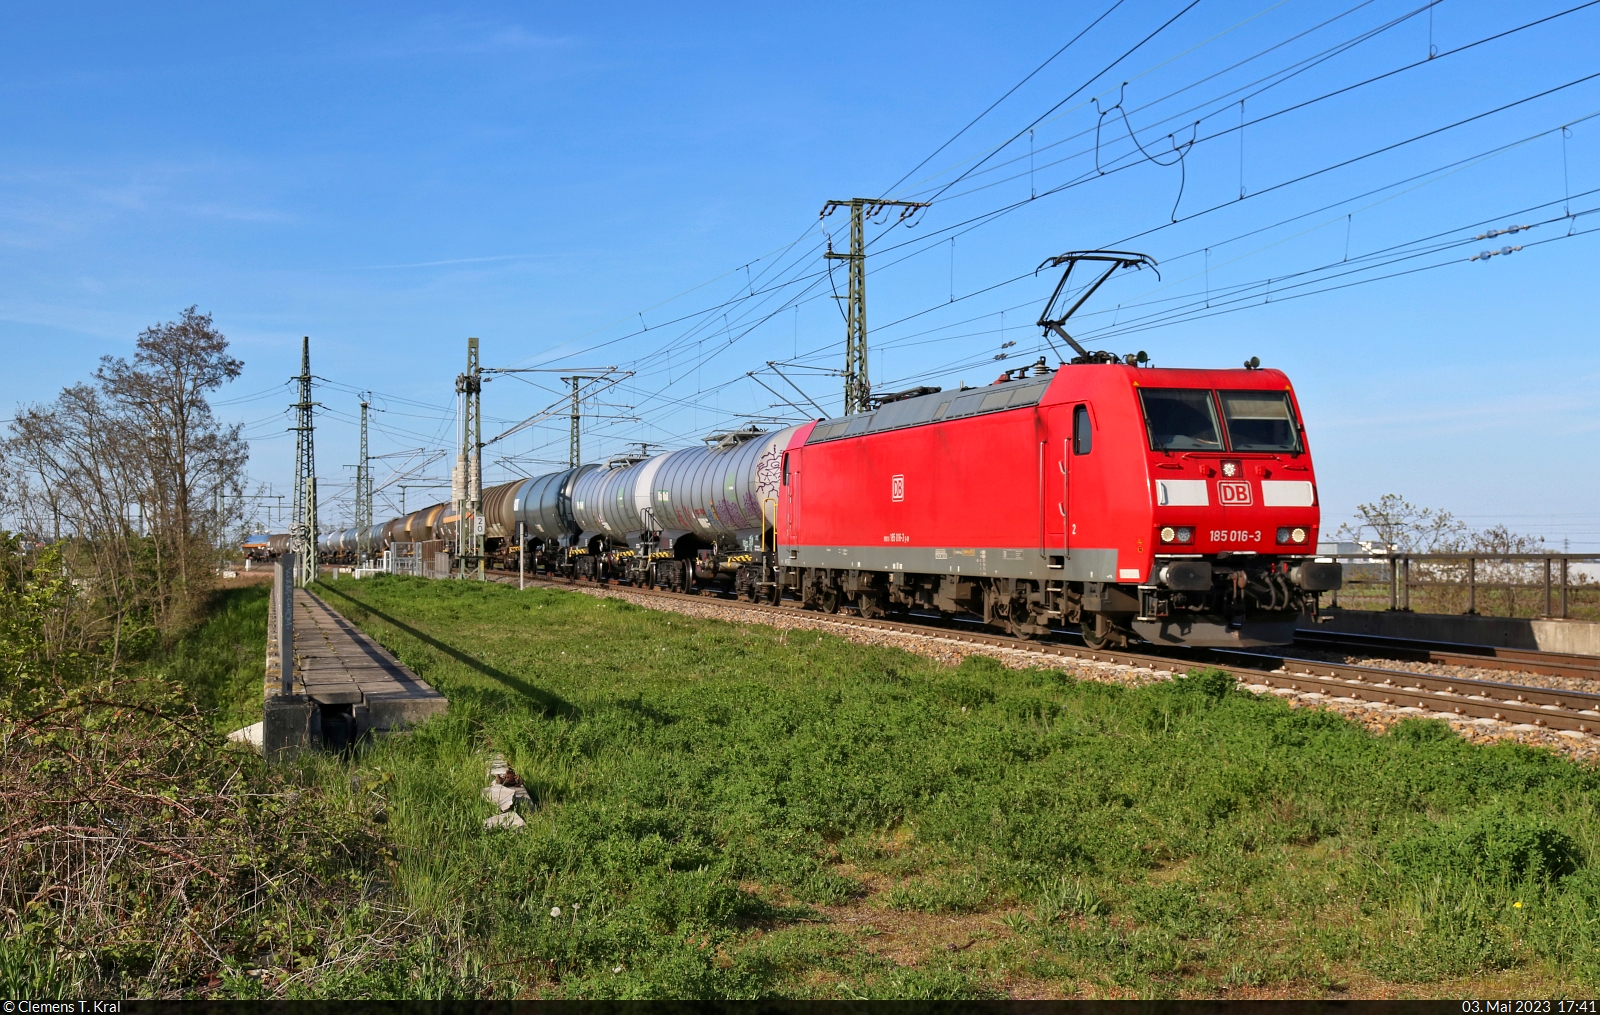 Kesselzug mit 185 016-3 unterwegs oberhalb der Leipziger Chaussee (B 6) in Halle (Saale) Richtung Abzweig Thüringer Bahn.

🧰 DB Cargo
🕓 3.5.2023 | 17:41 Uhr